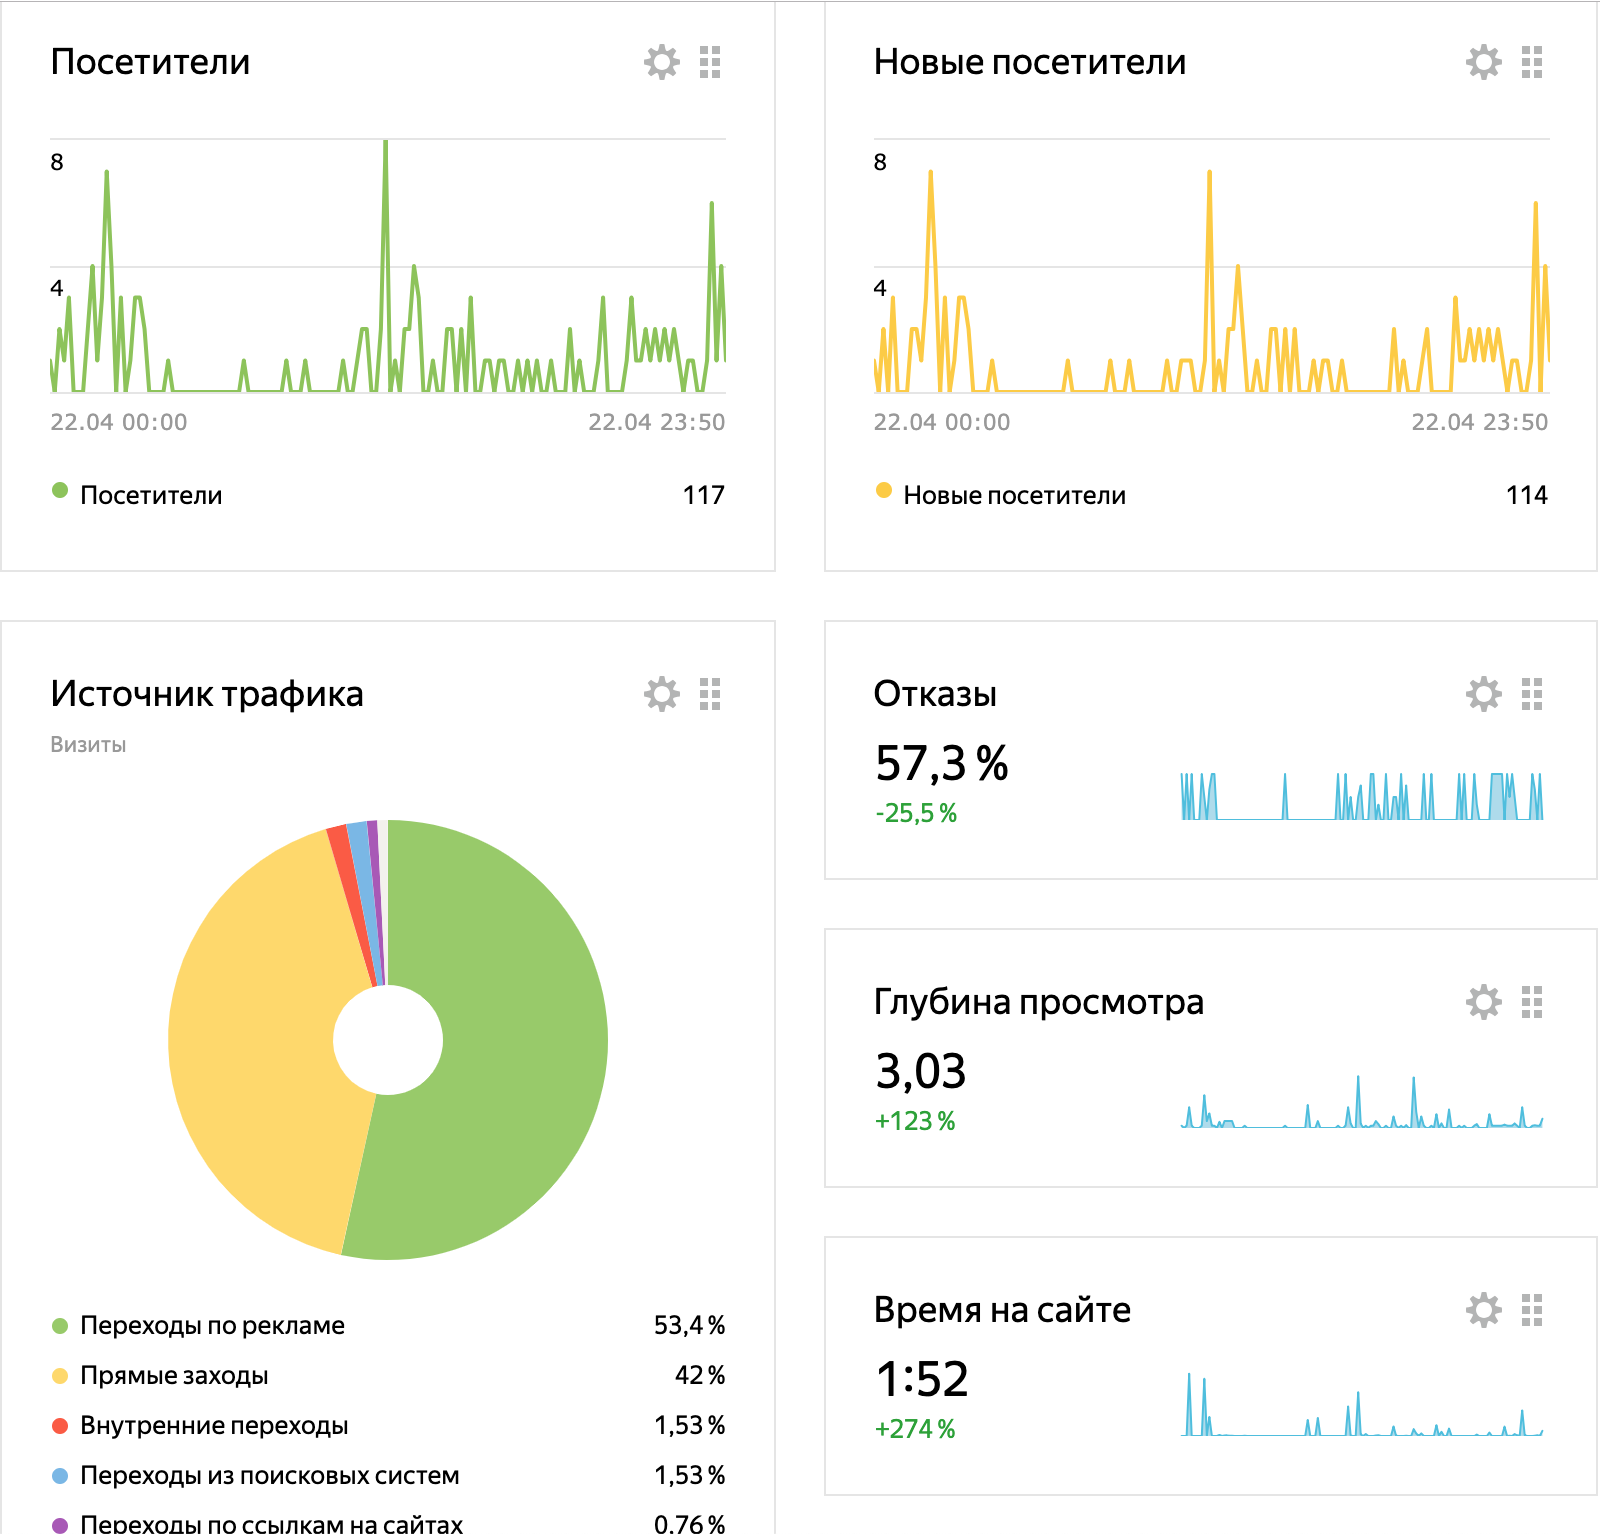 Основные показатели Yandex Metrika